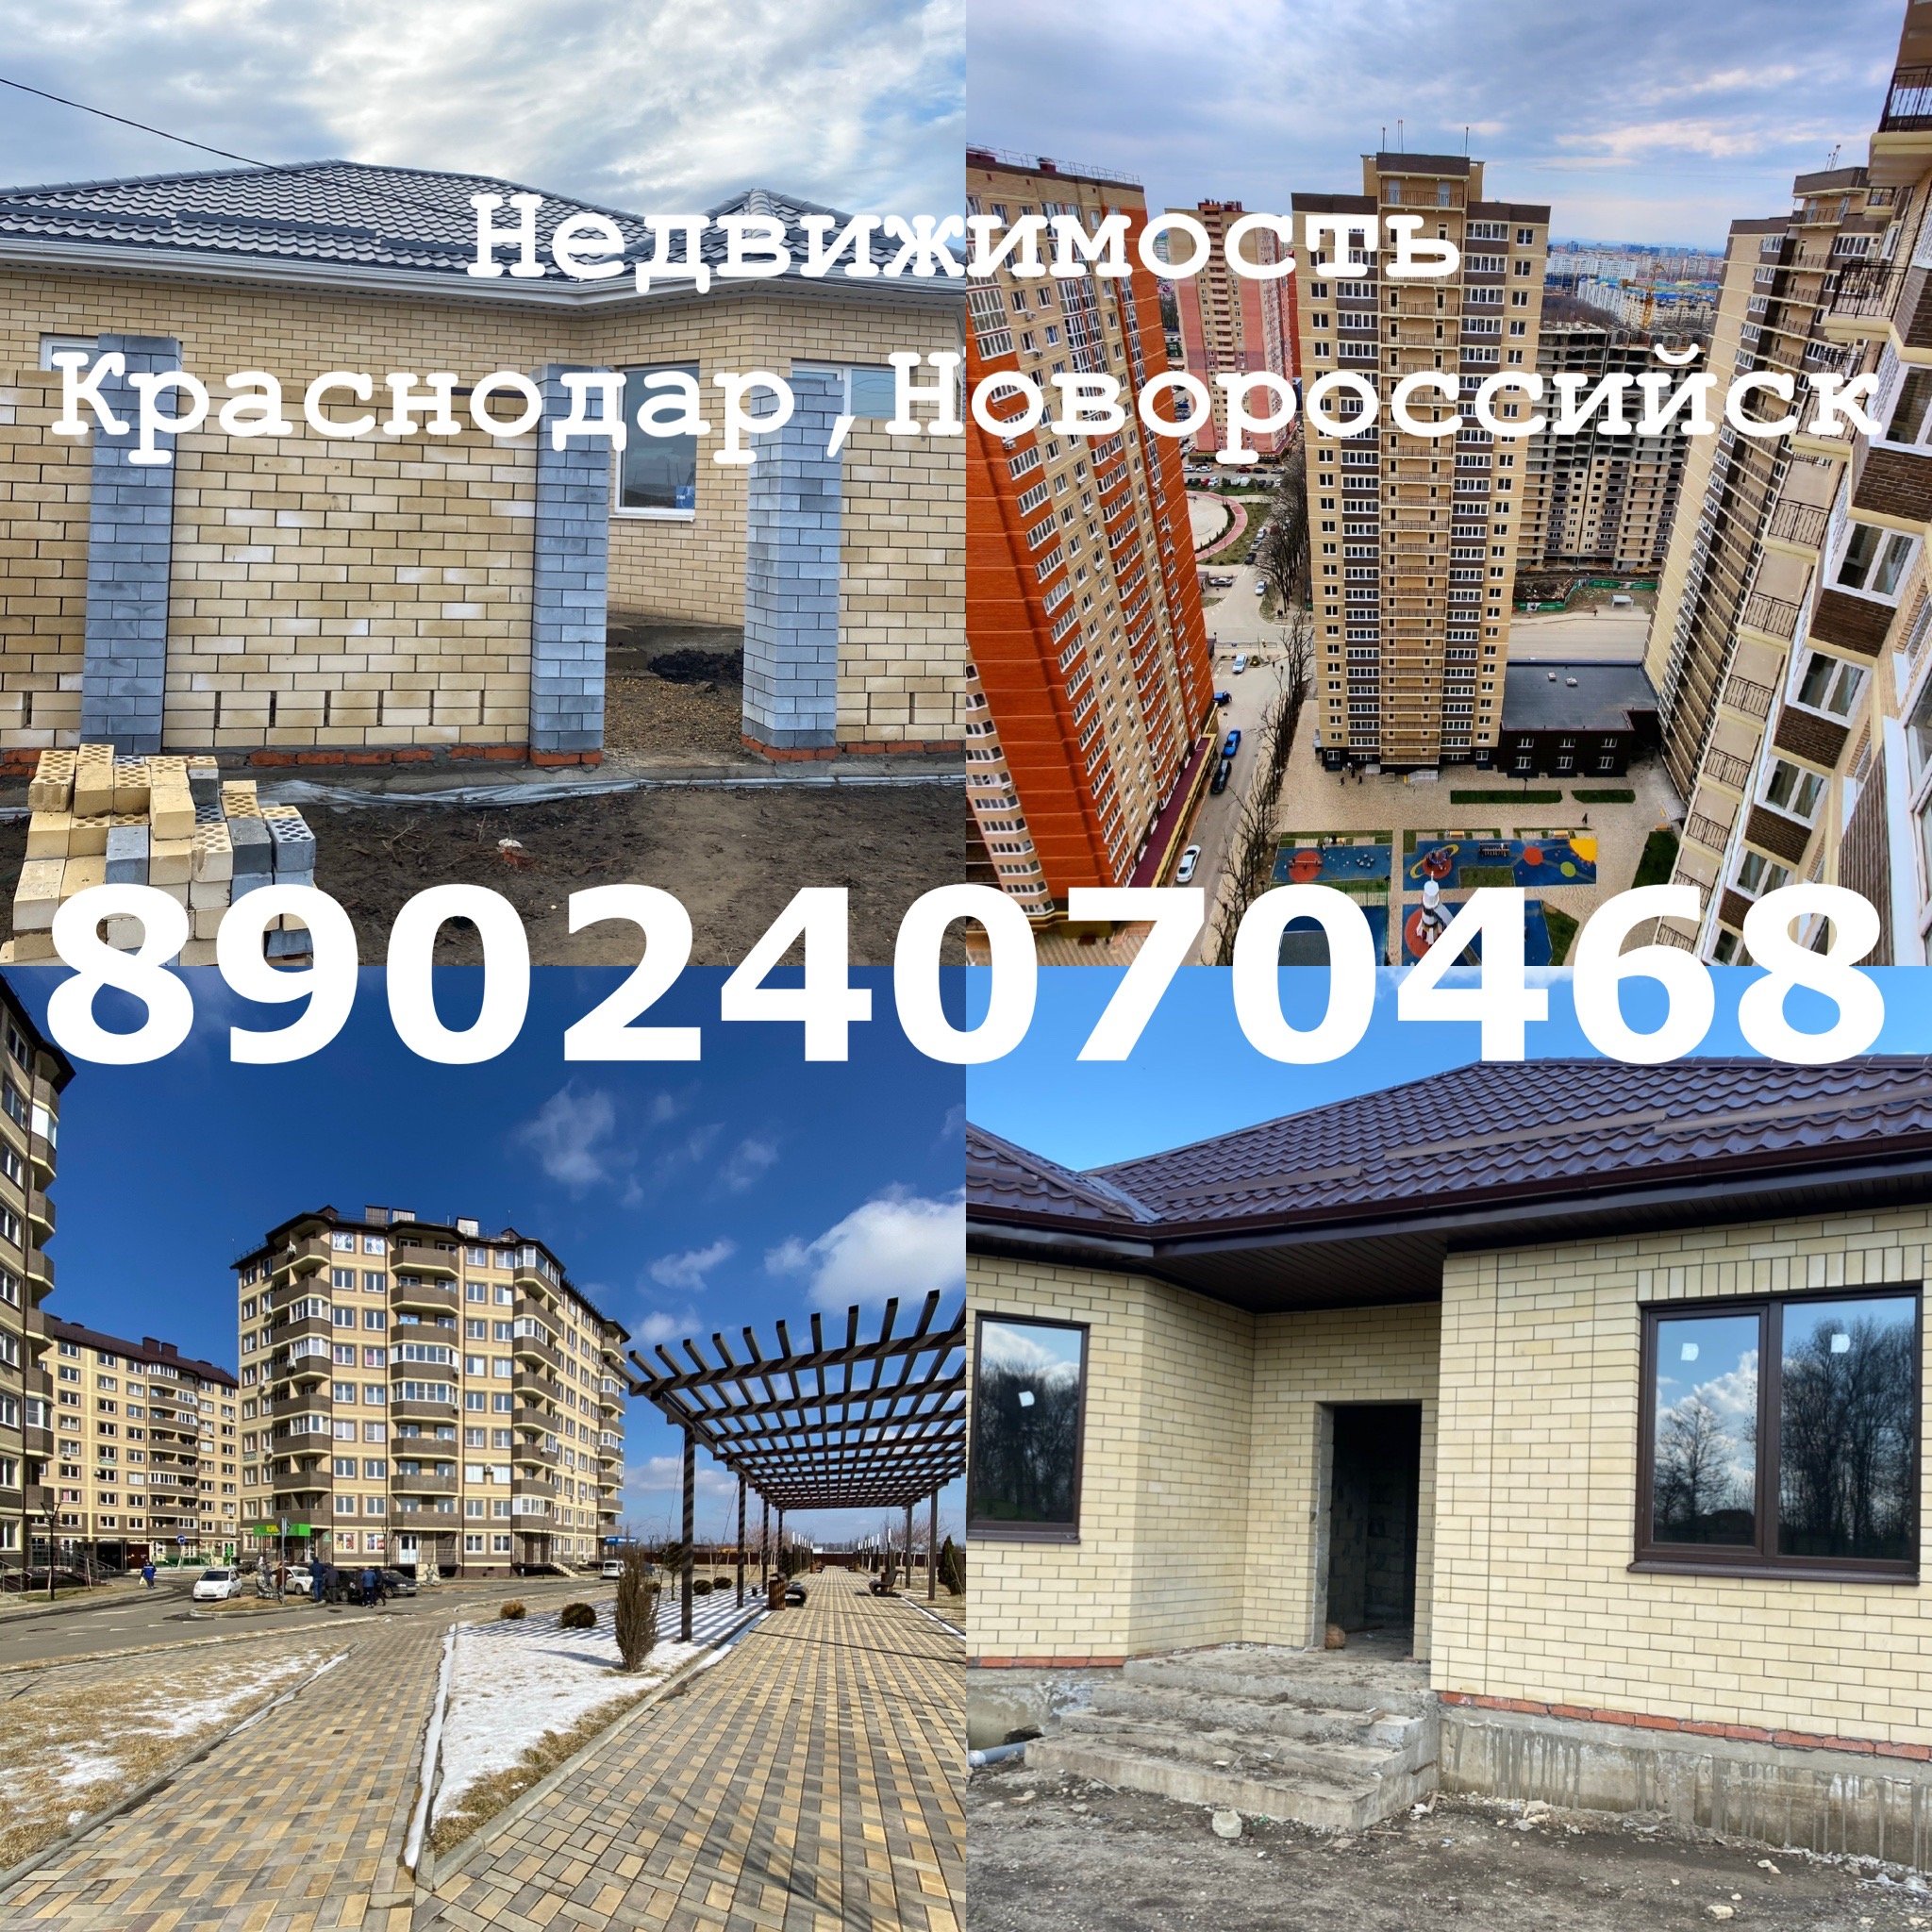 Недвижимость Краснодар и Новороссийск